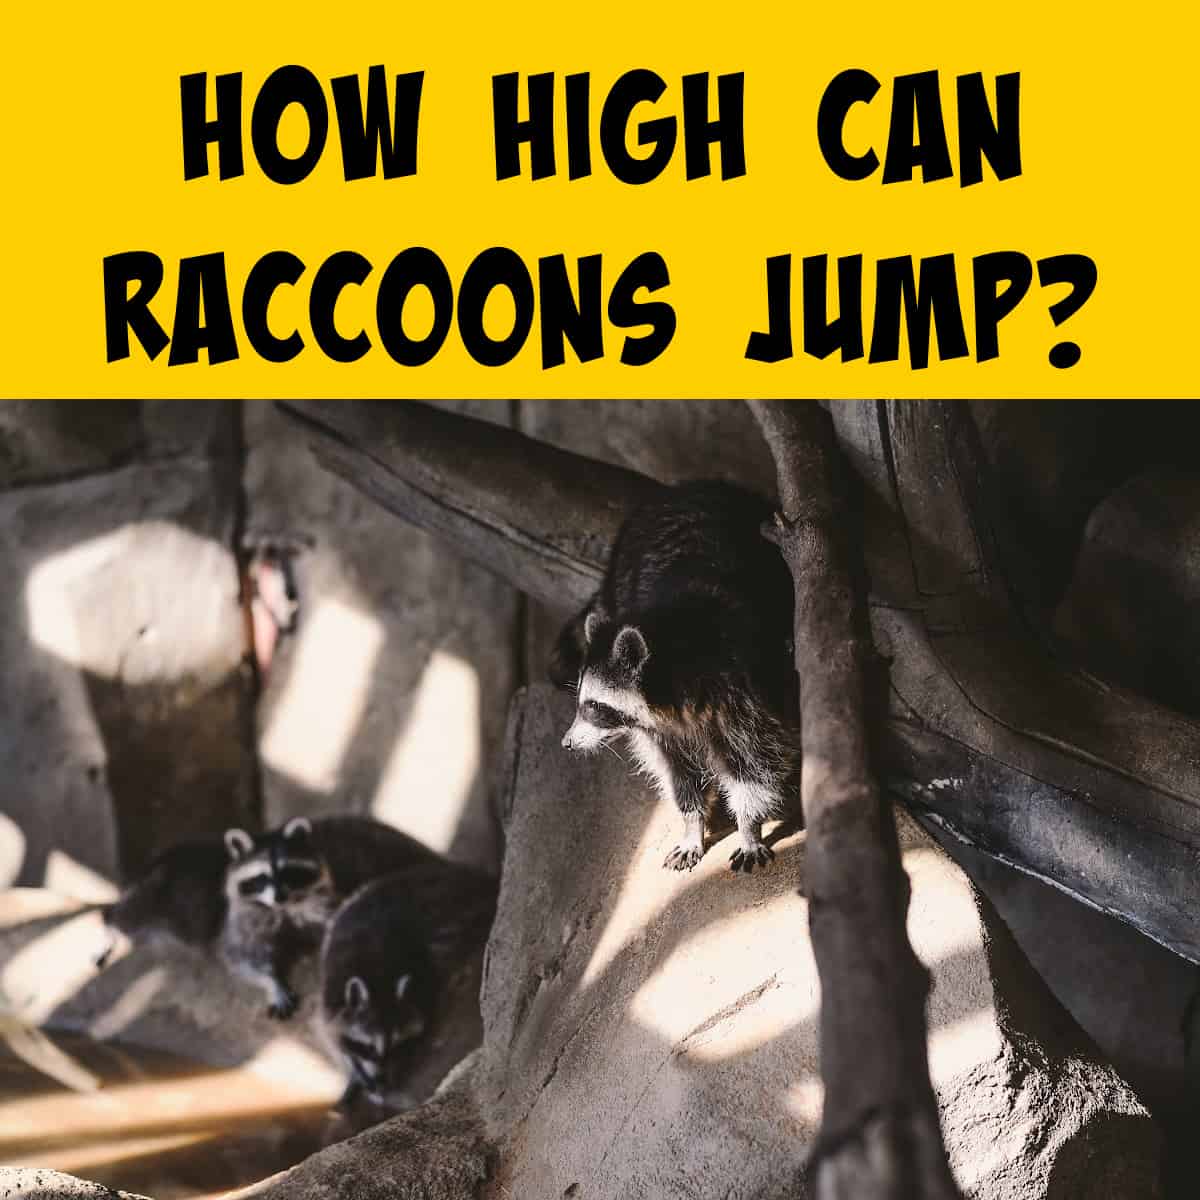 Raccoon on a high ledge